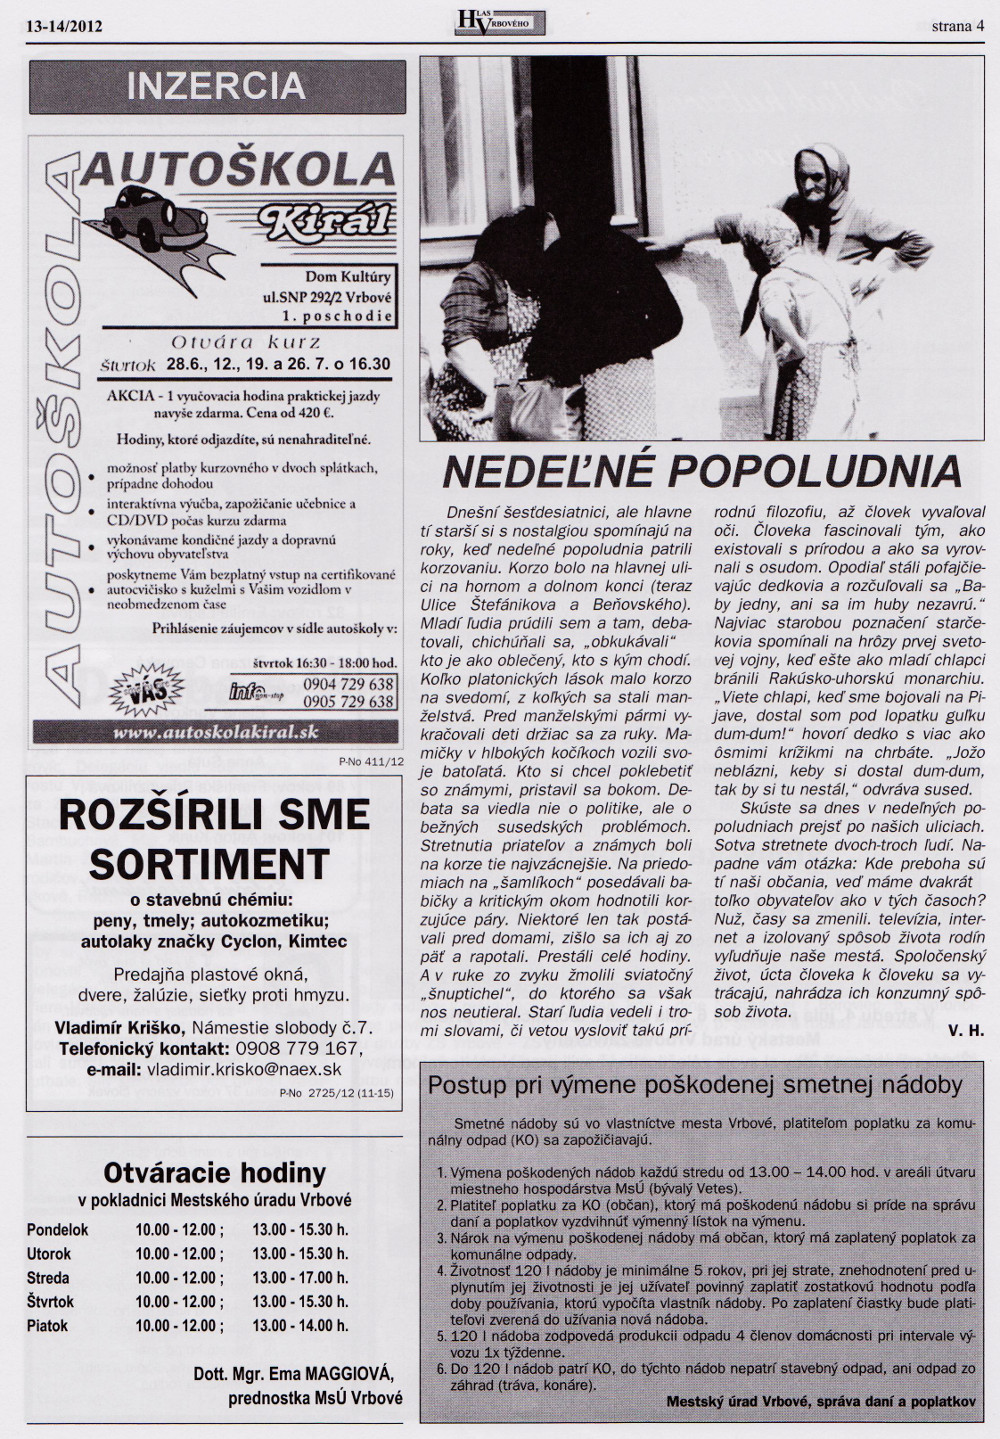 Hlas Vrbového 13-14/2012, strana 4